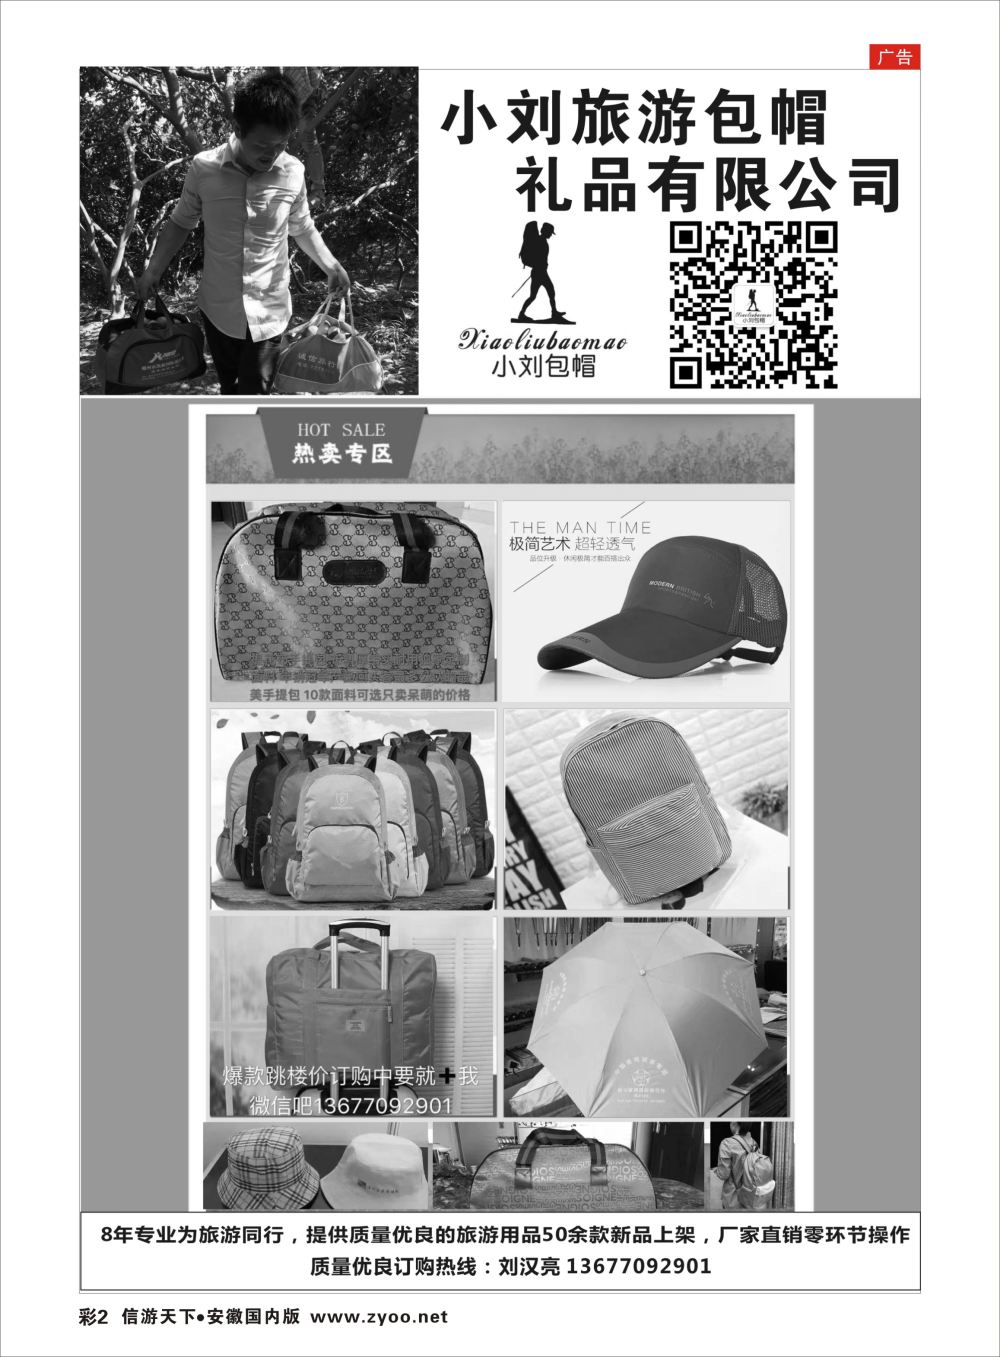 彩02 小刘旅游包帽礼品有限公司 温州专版